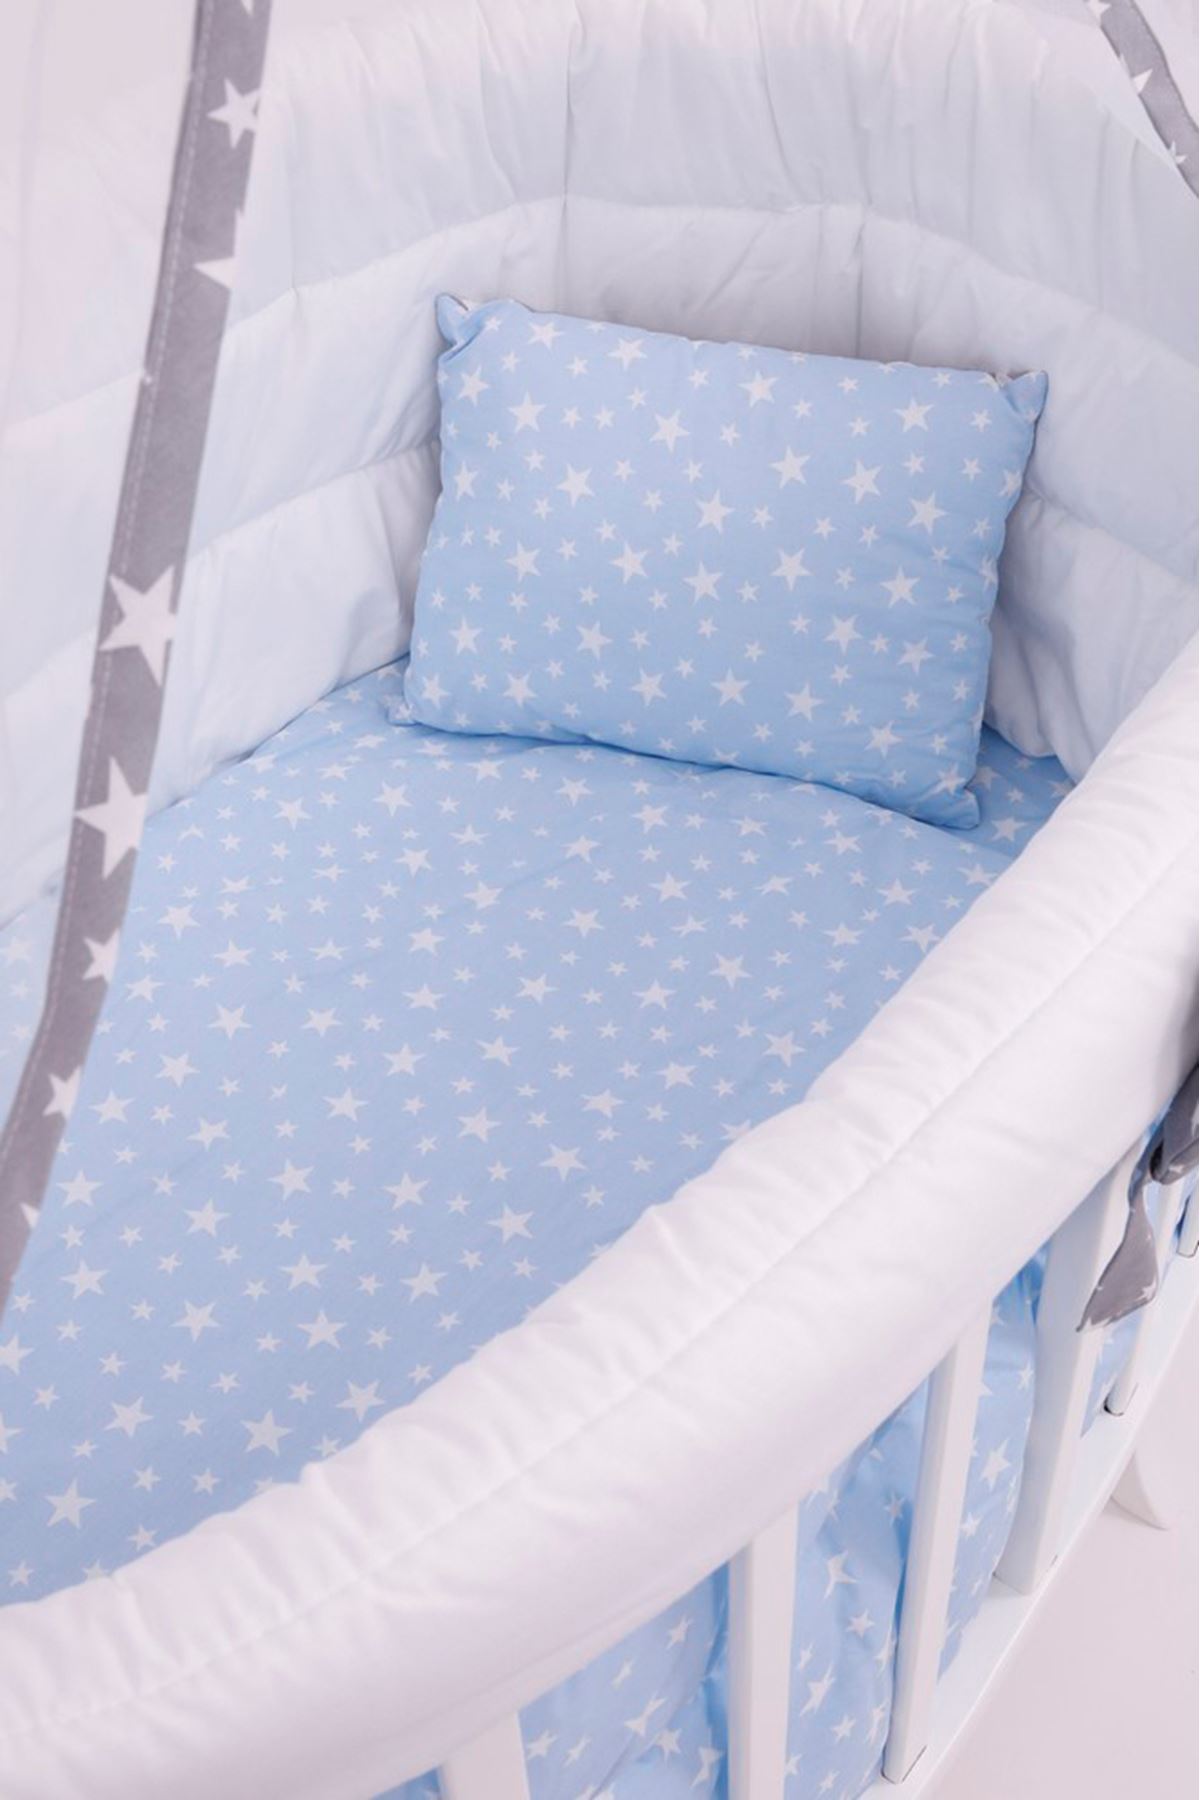 Amedan Beyaz Sepet Beşik "Mavi Yıldızlı Uyku Seti" ile